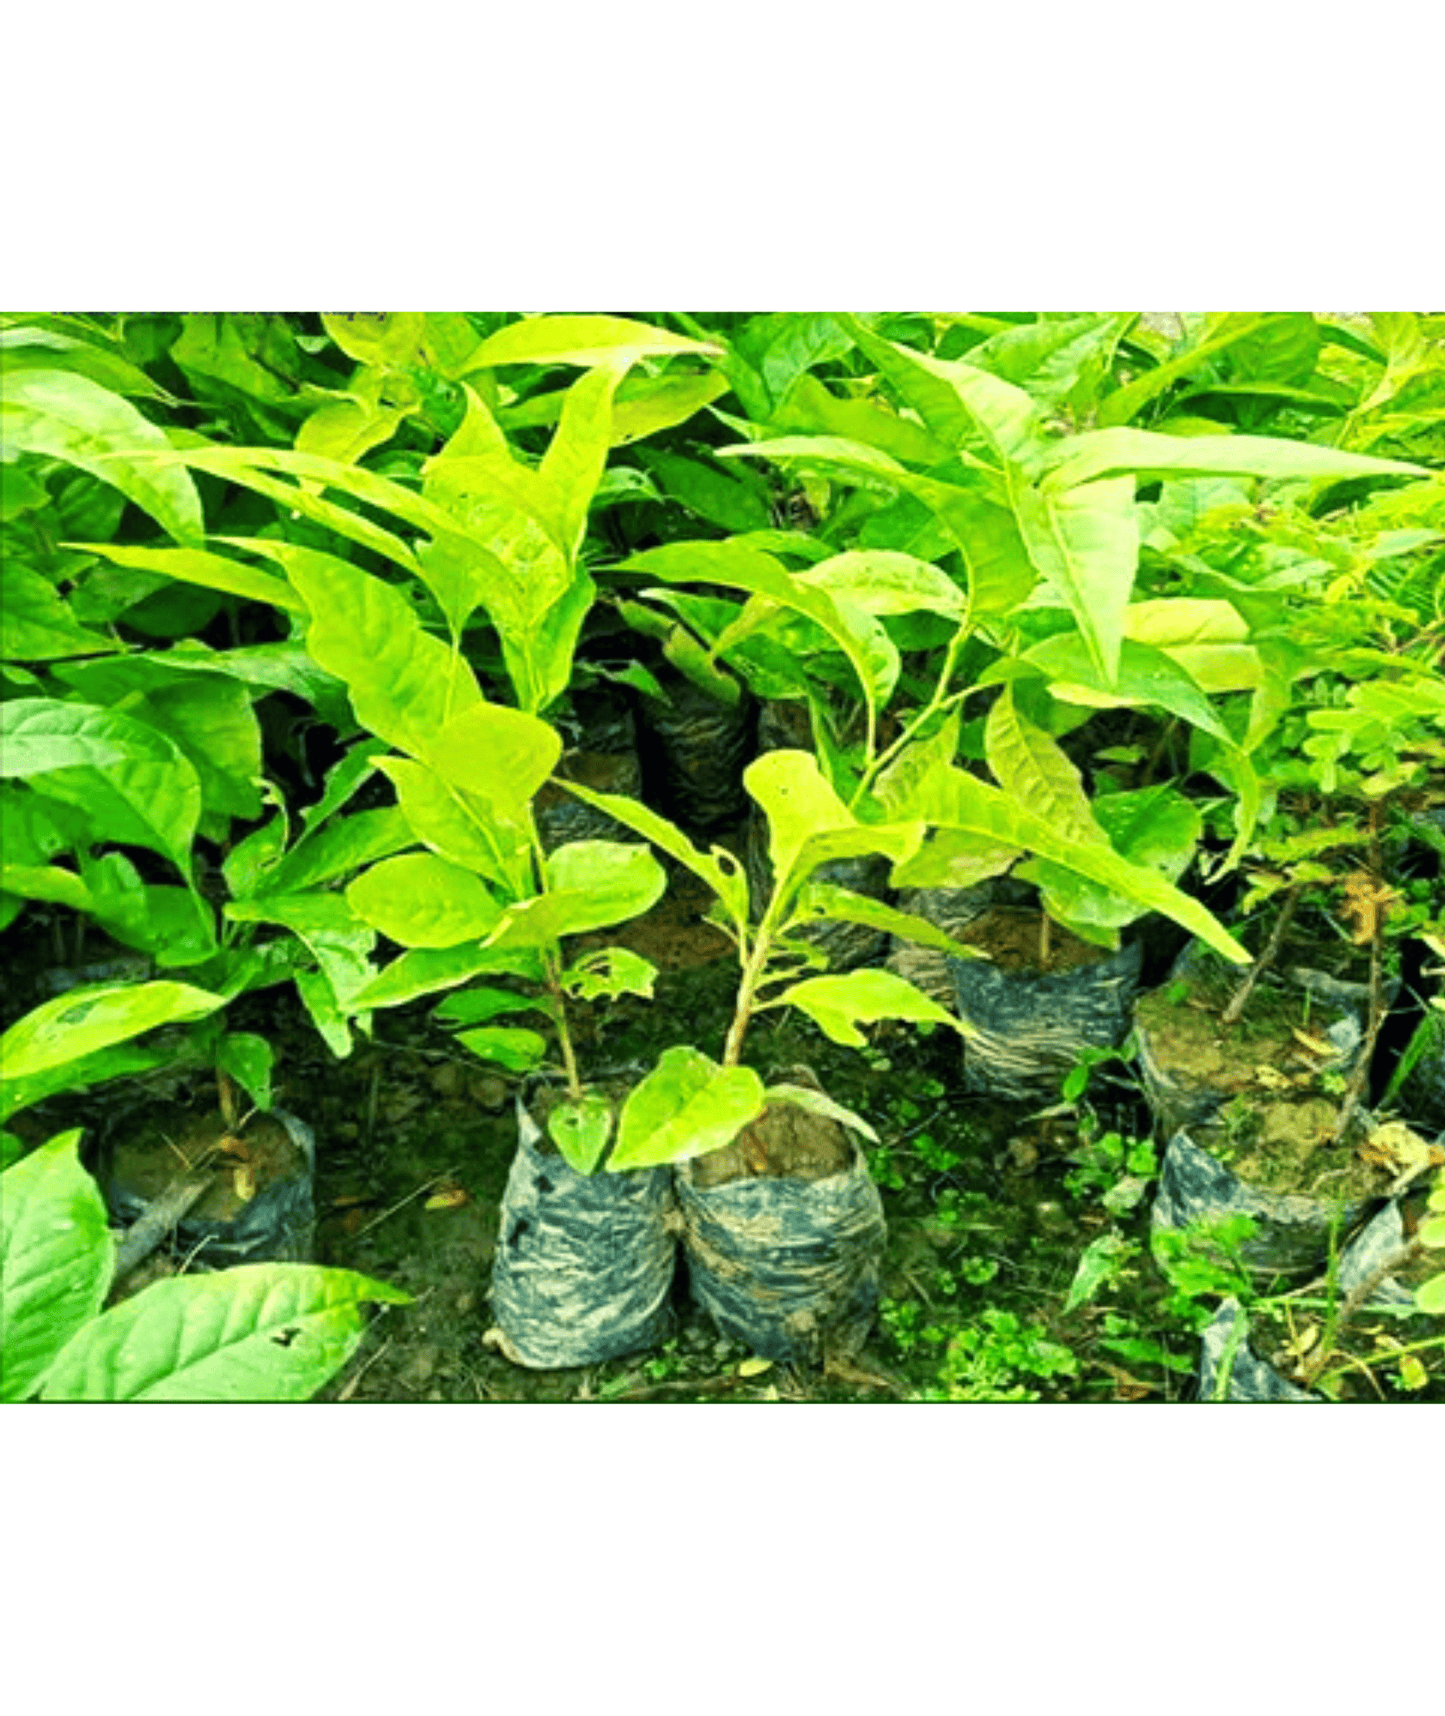 Bael Patra Leaf / Bel Tree/ Bilva Patra/ Bel Patra / Aegle Marmelos with Decor Pot